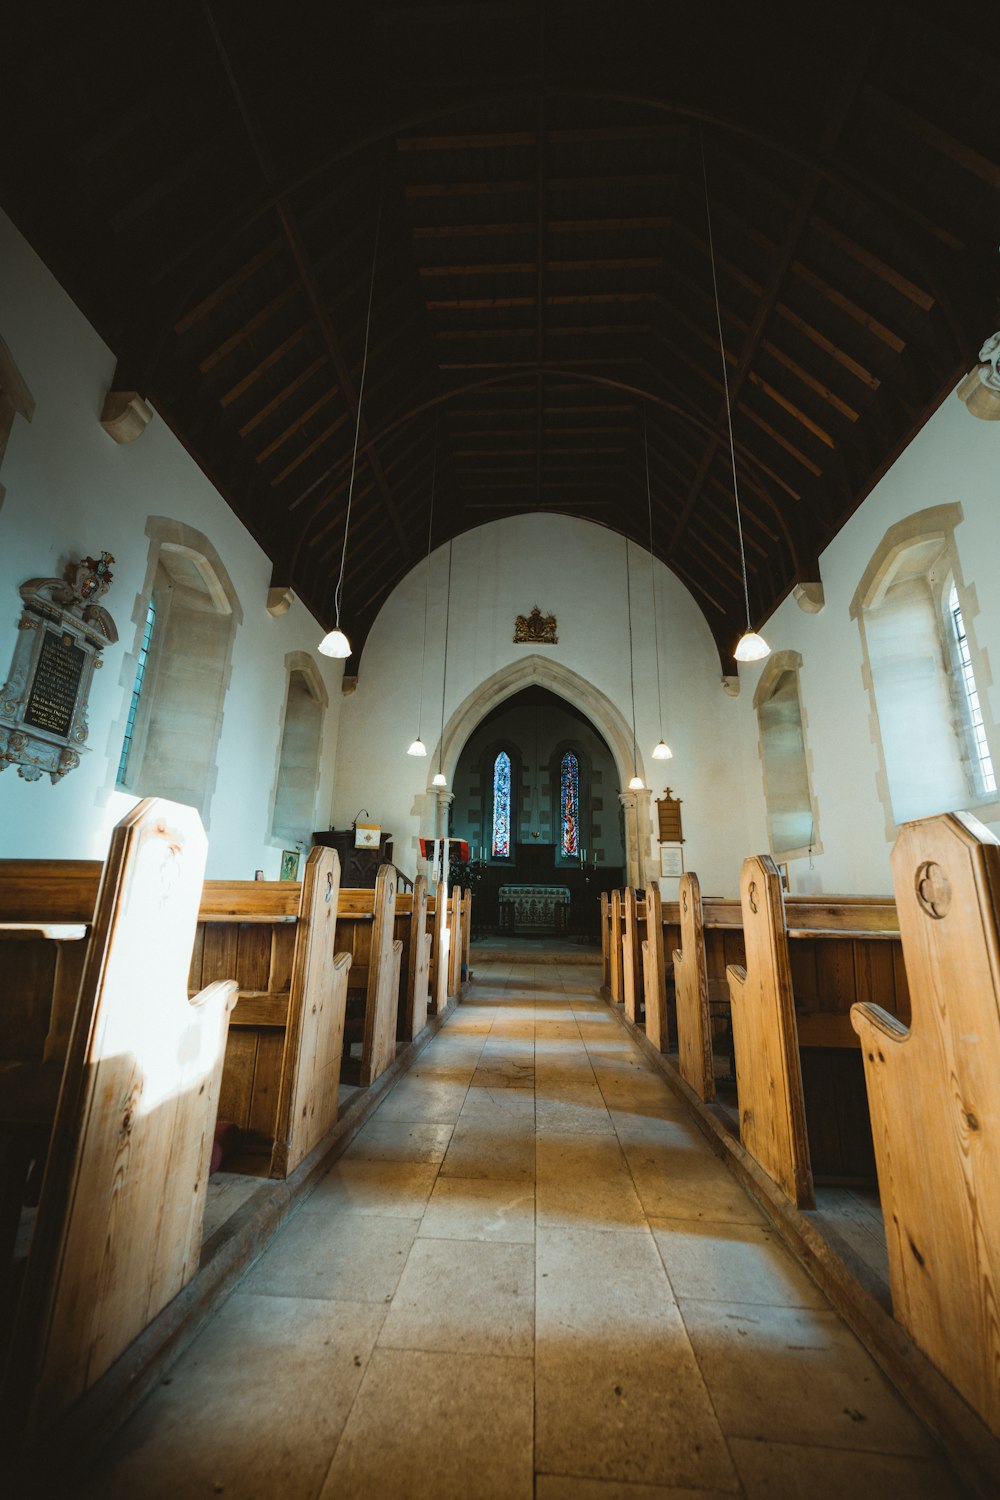 Sillas de madera marrón dentro de la iglesia